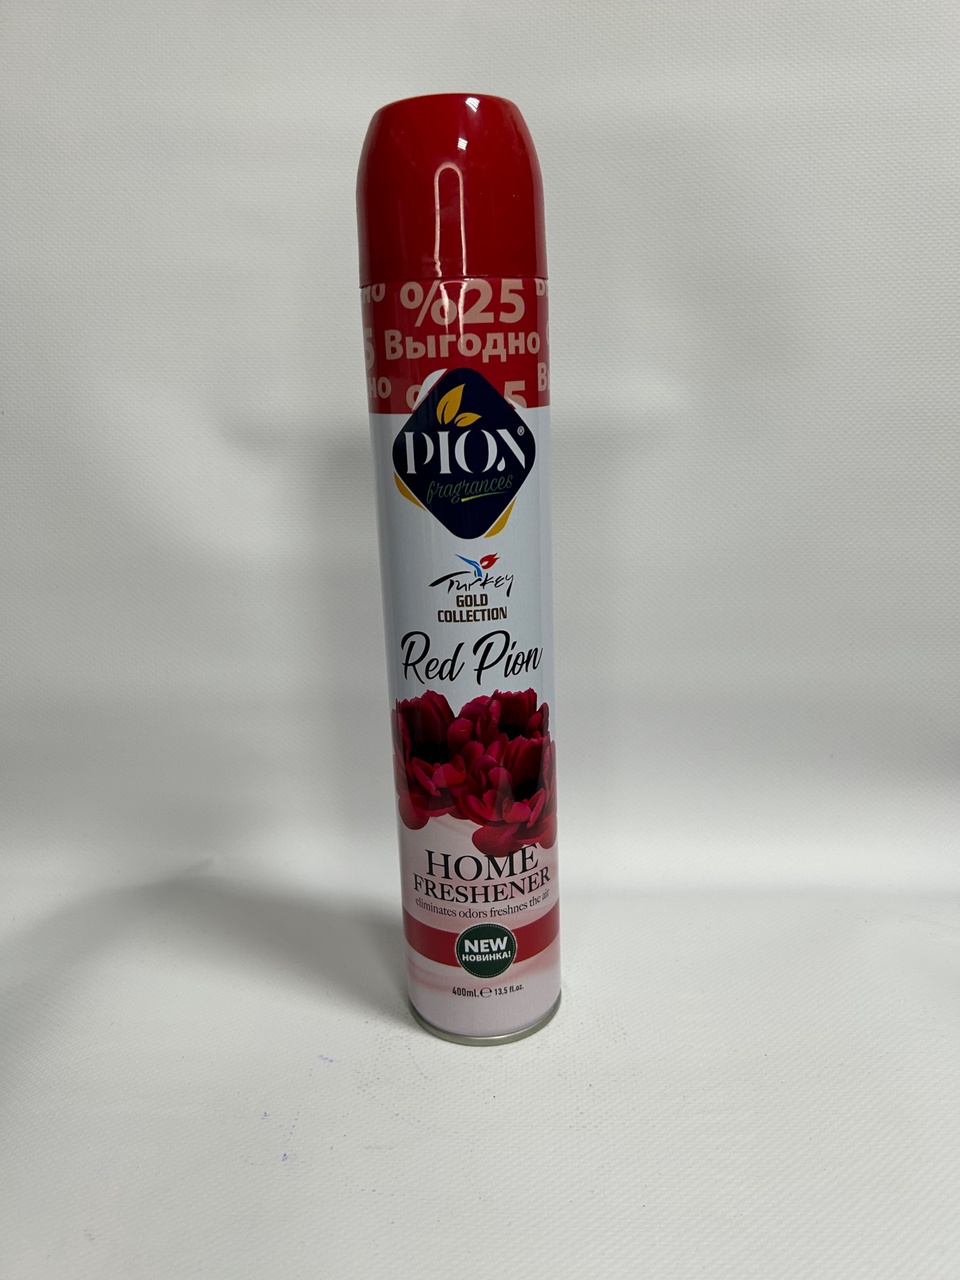 Освежитель воздуха Diox с ароматом “Красный Пион” 400ml - 130 ₽, заказать онлайн.